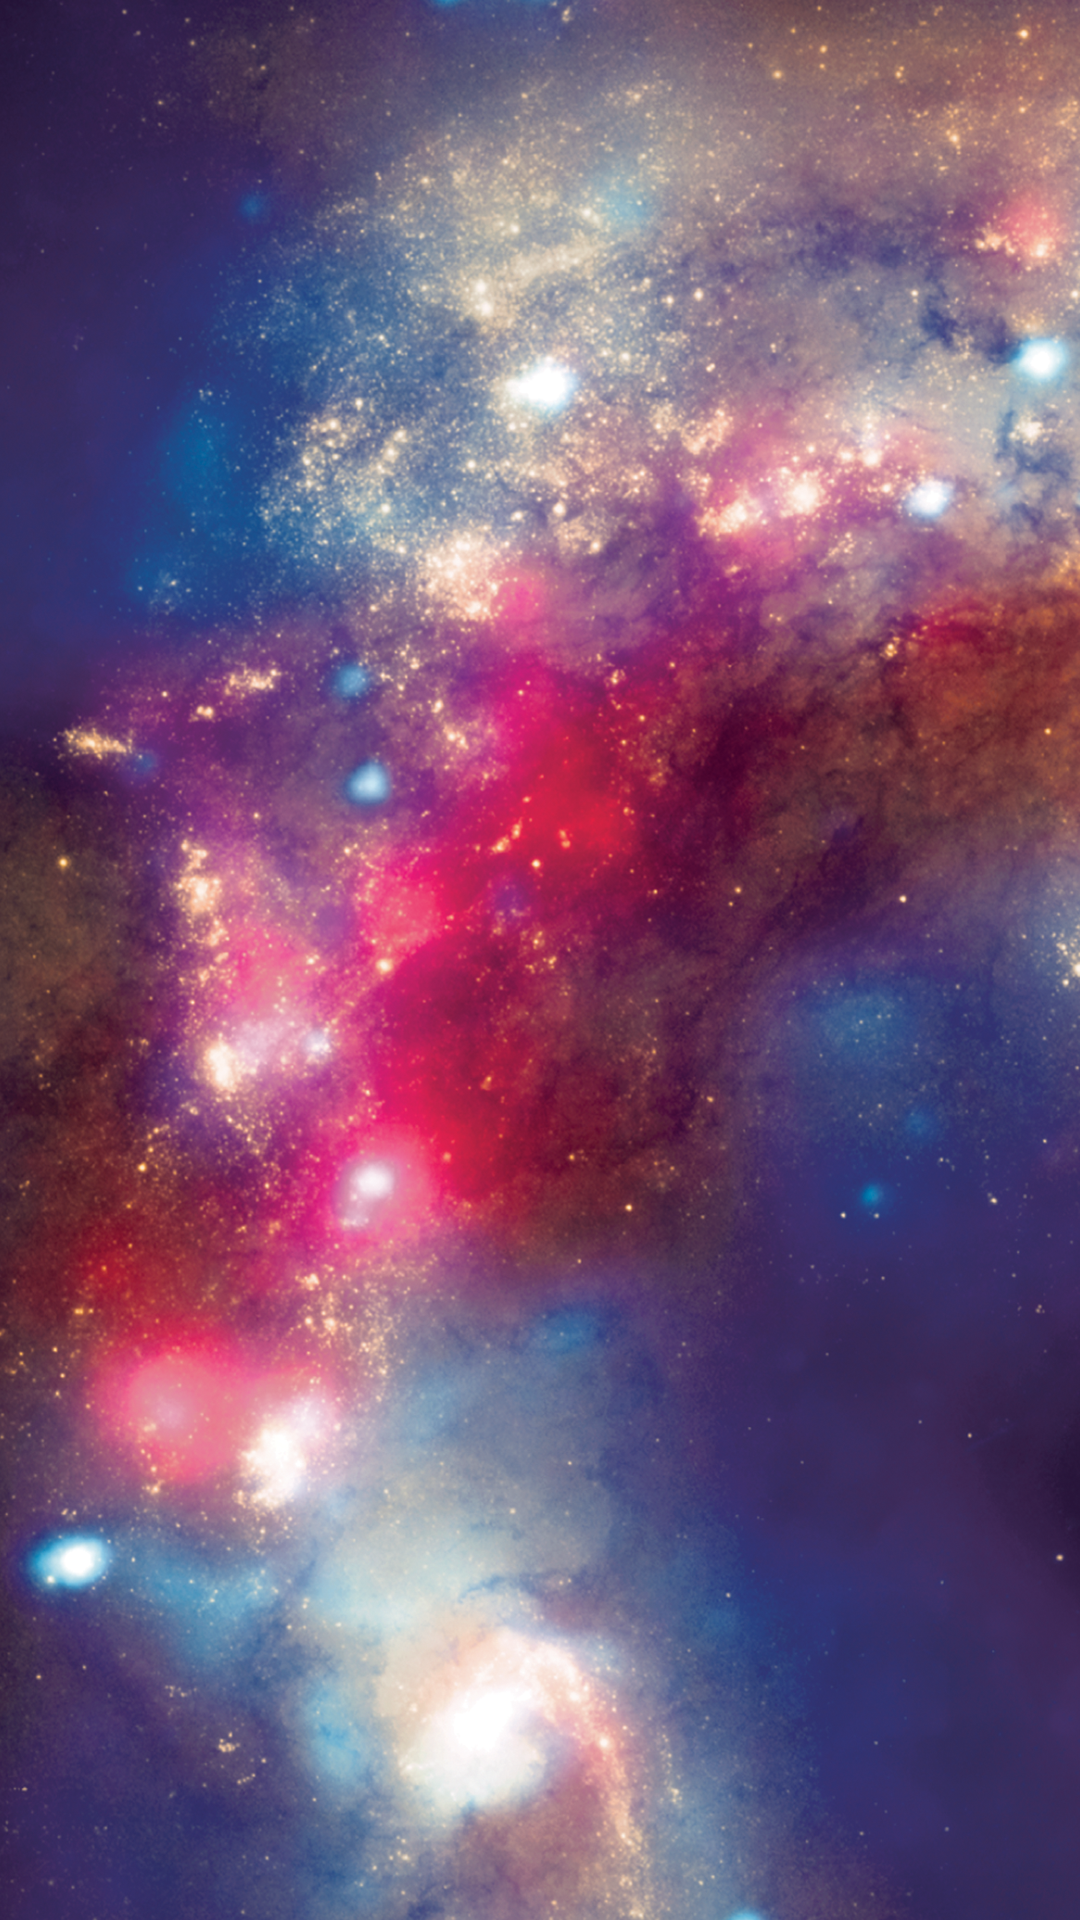 超新星の壁紙,星雲,空,宇宙,天体,銀河